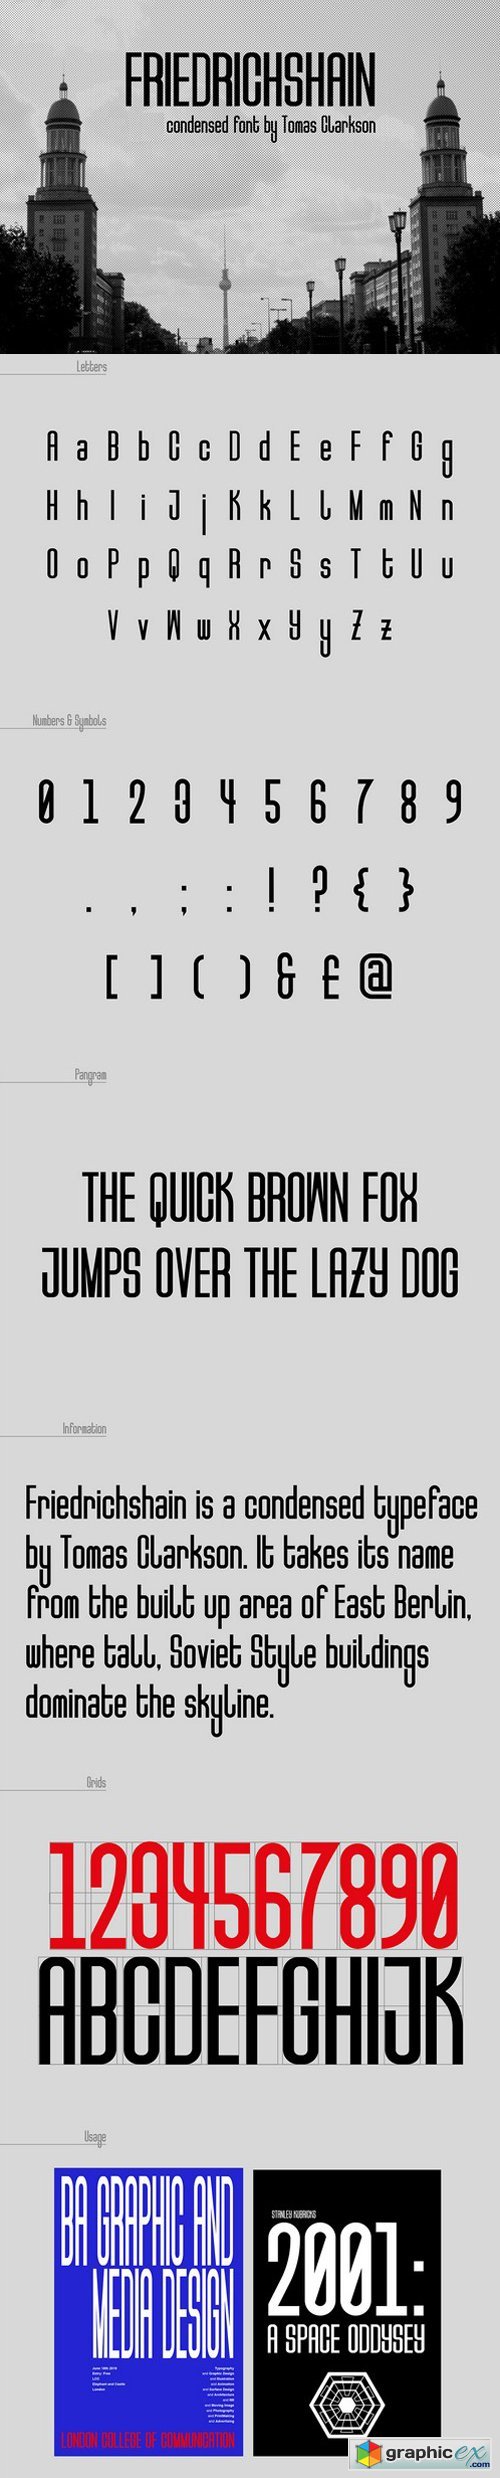 Friedrichshain Typeface